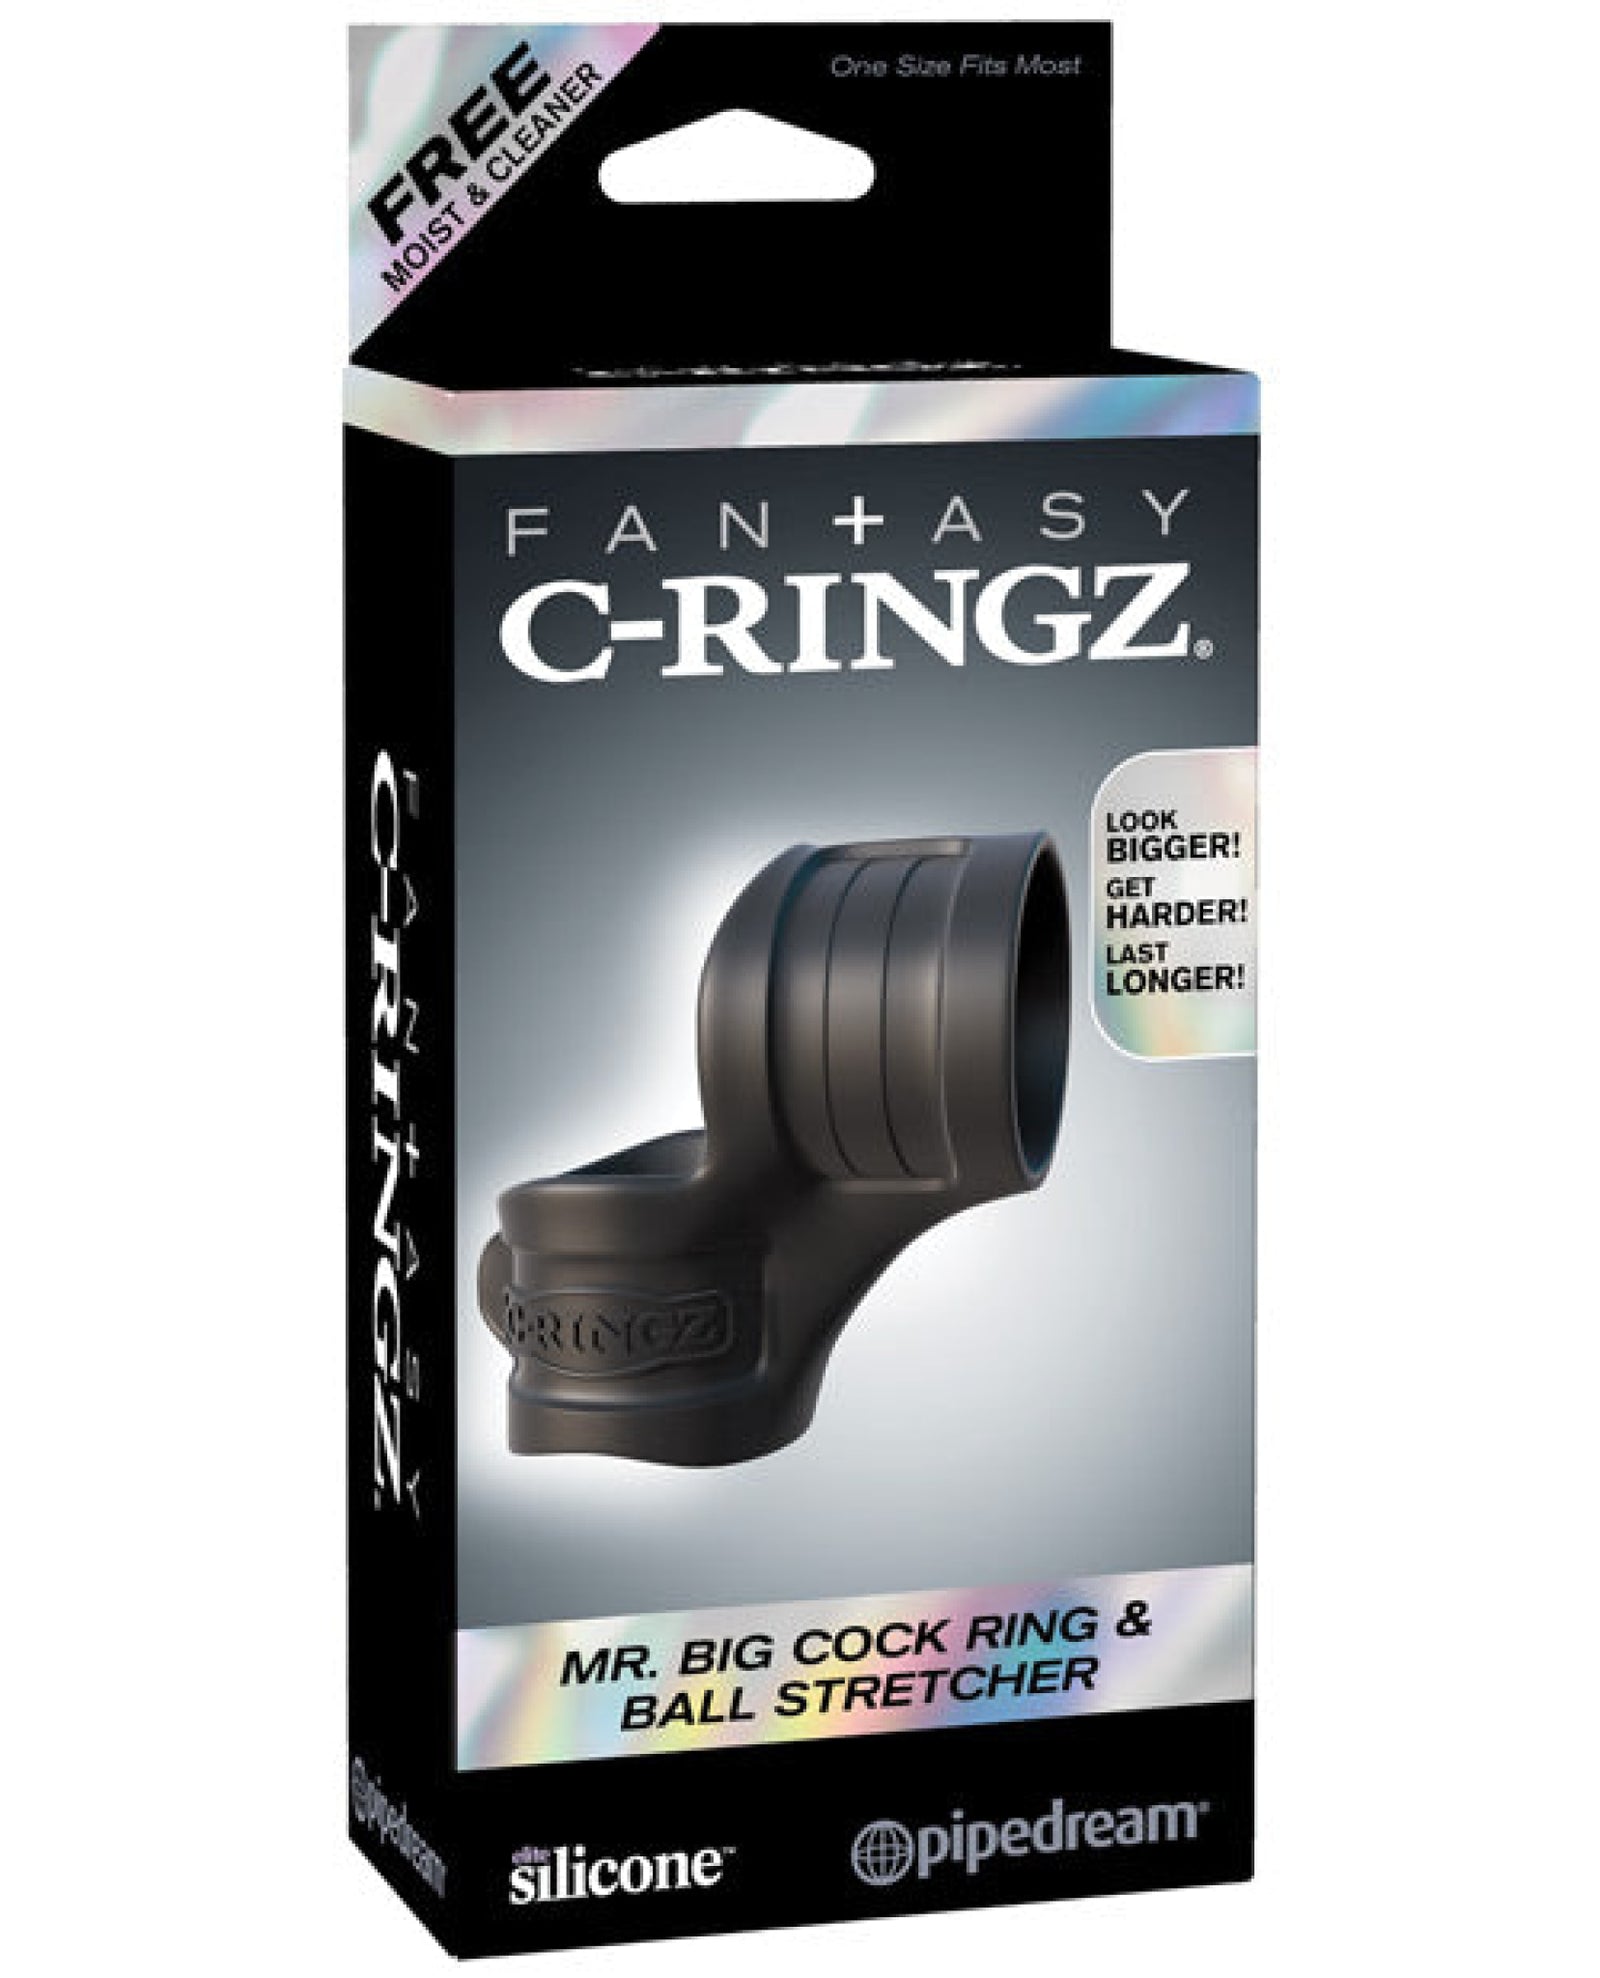 Fantasy C-ringz Mr. Big Cock Ring & Ball Stretcher - Black Pipedream®